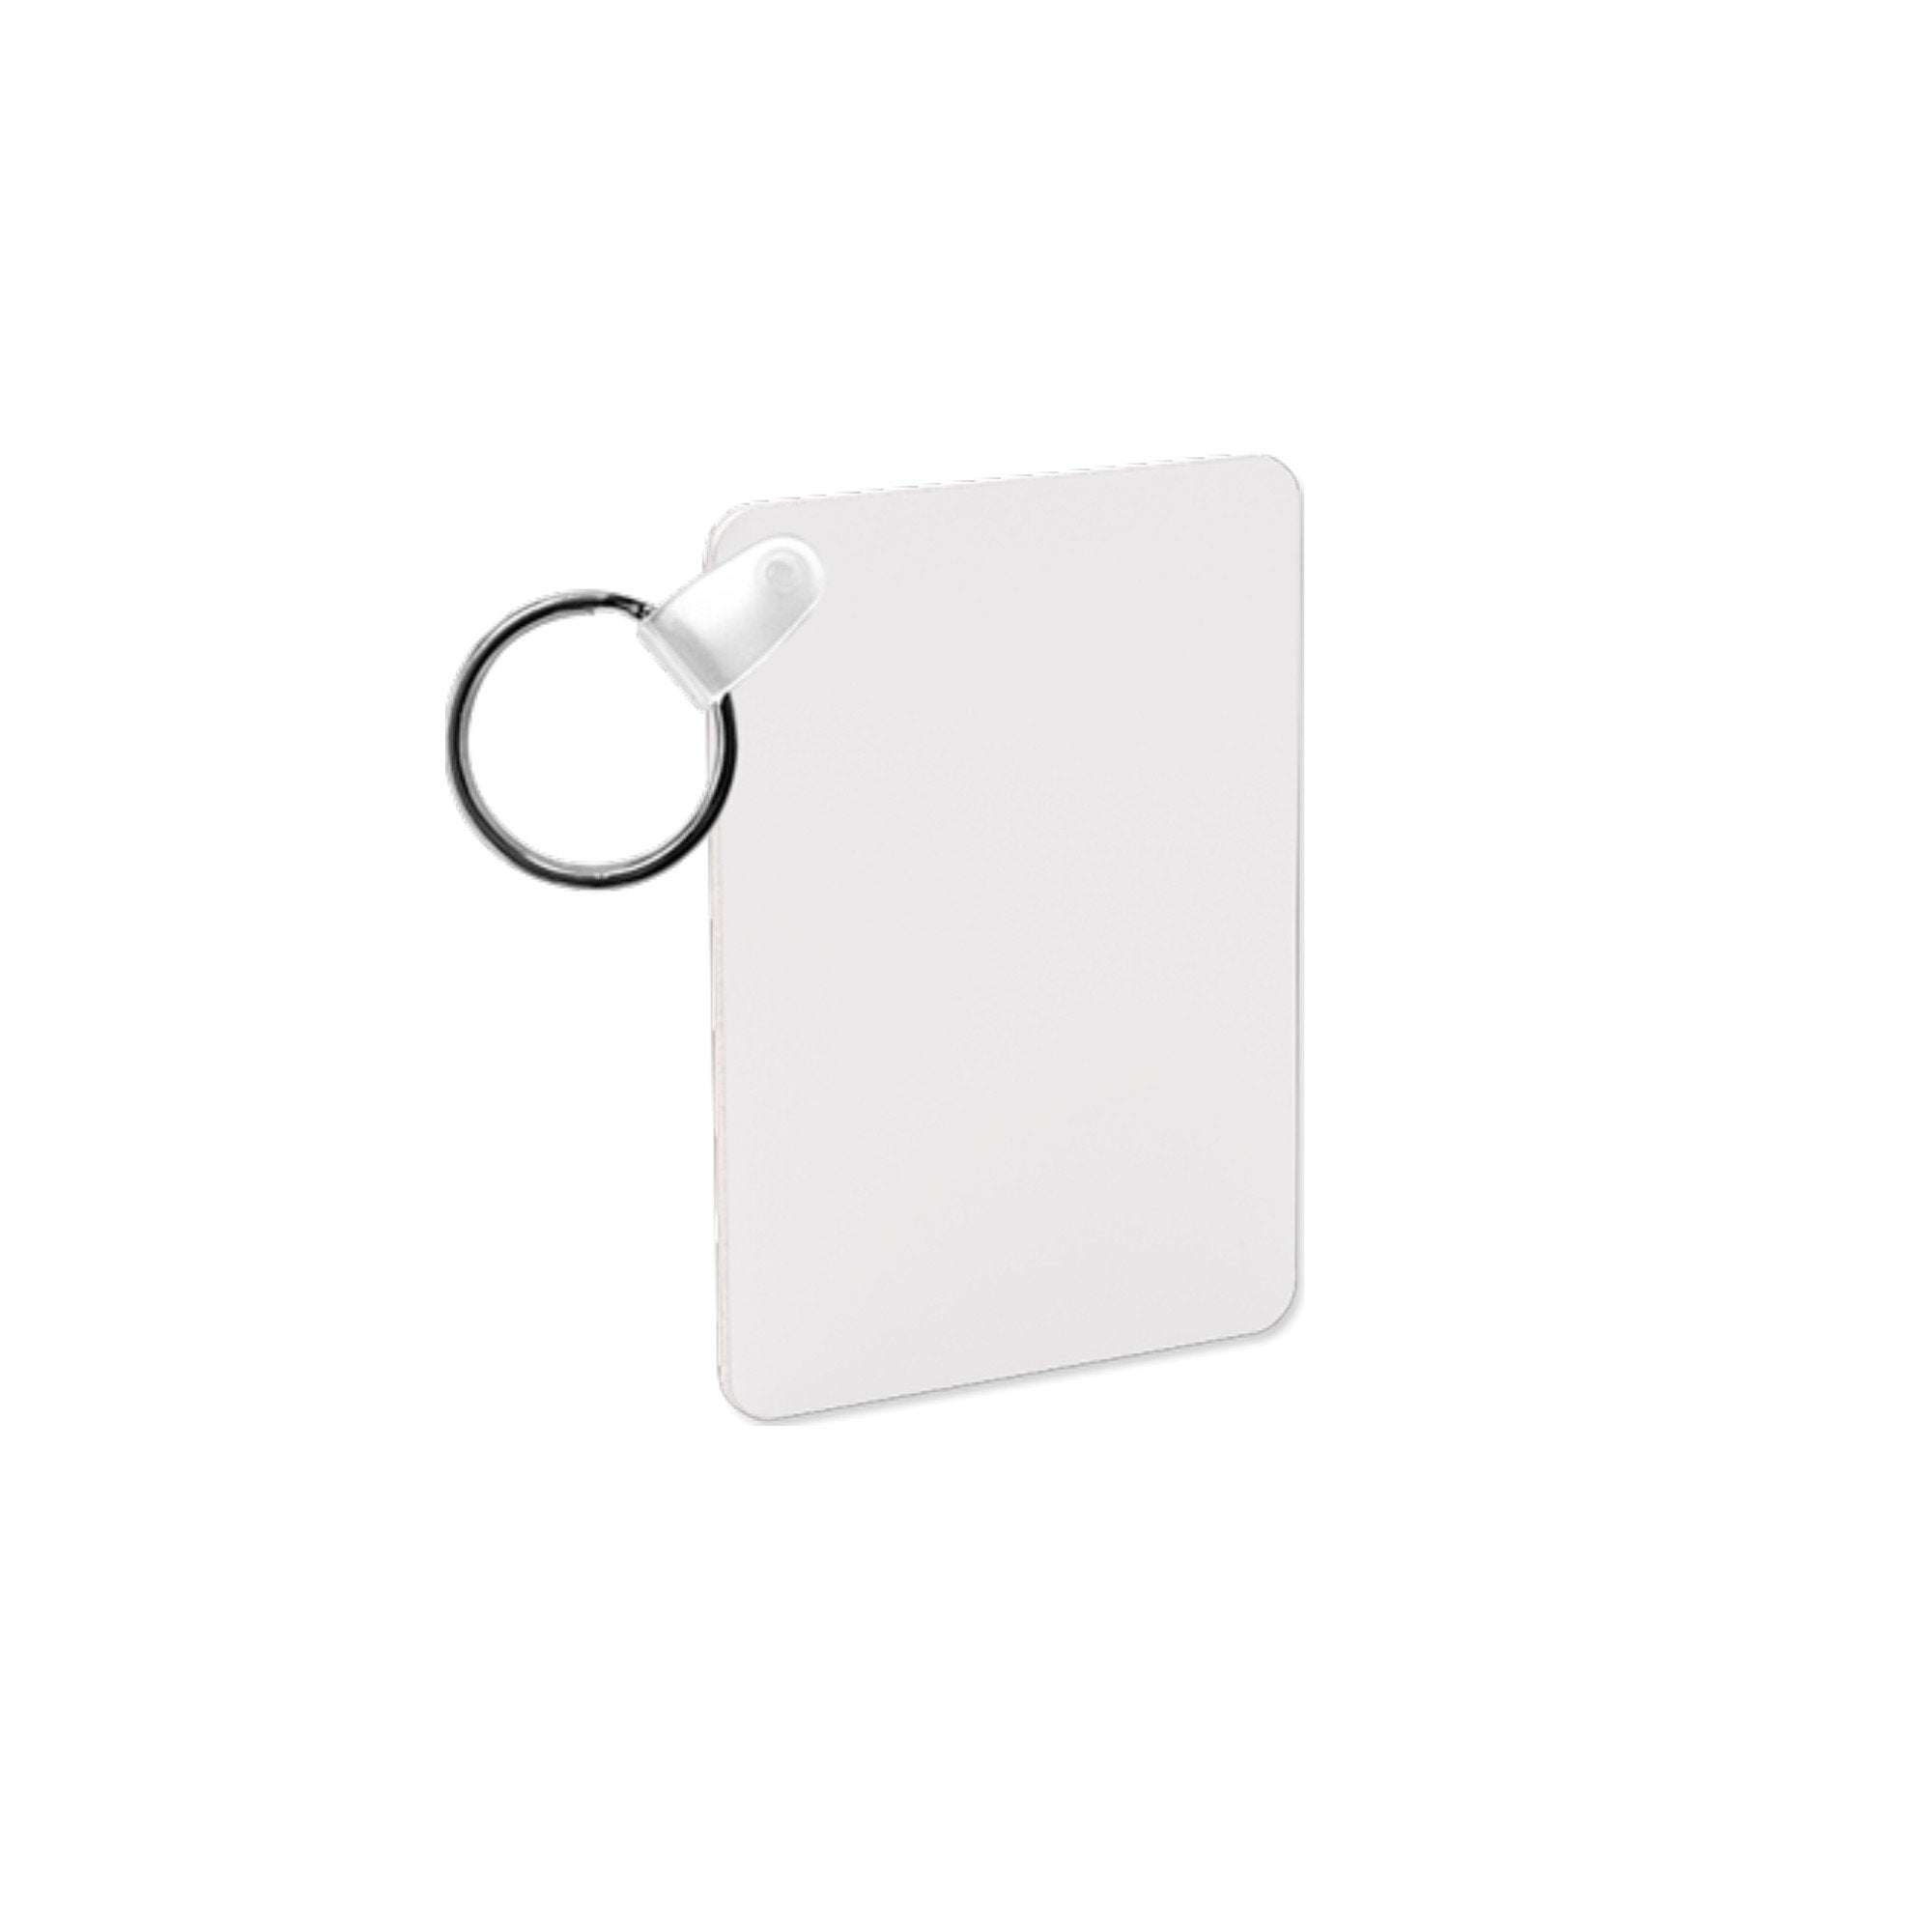 Unisub Sublimation Rectangle Keychain Blank - 1.6 x 2.25 - 5995 - 10